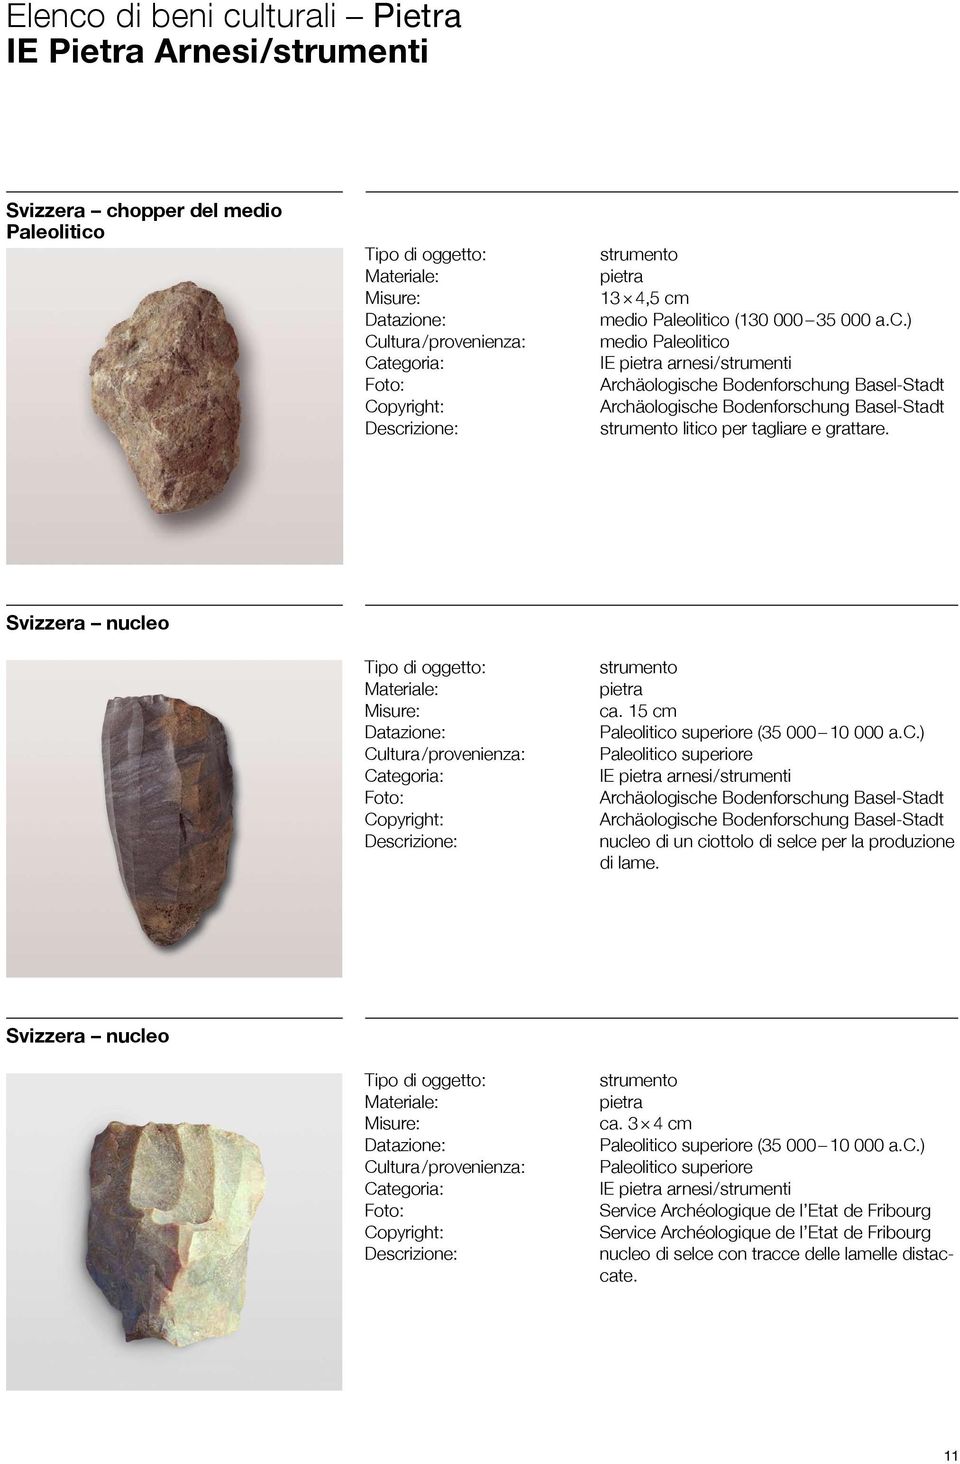 15 cm Paleolitico superiore (35 000 10 000 a.c.) Paleolitico superiore IE pietra arnesi / strumenti nucleo di un ciottolo di selce per la produzione di lame.